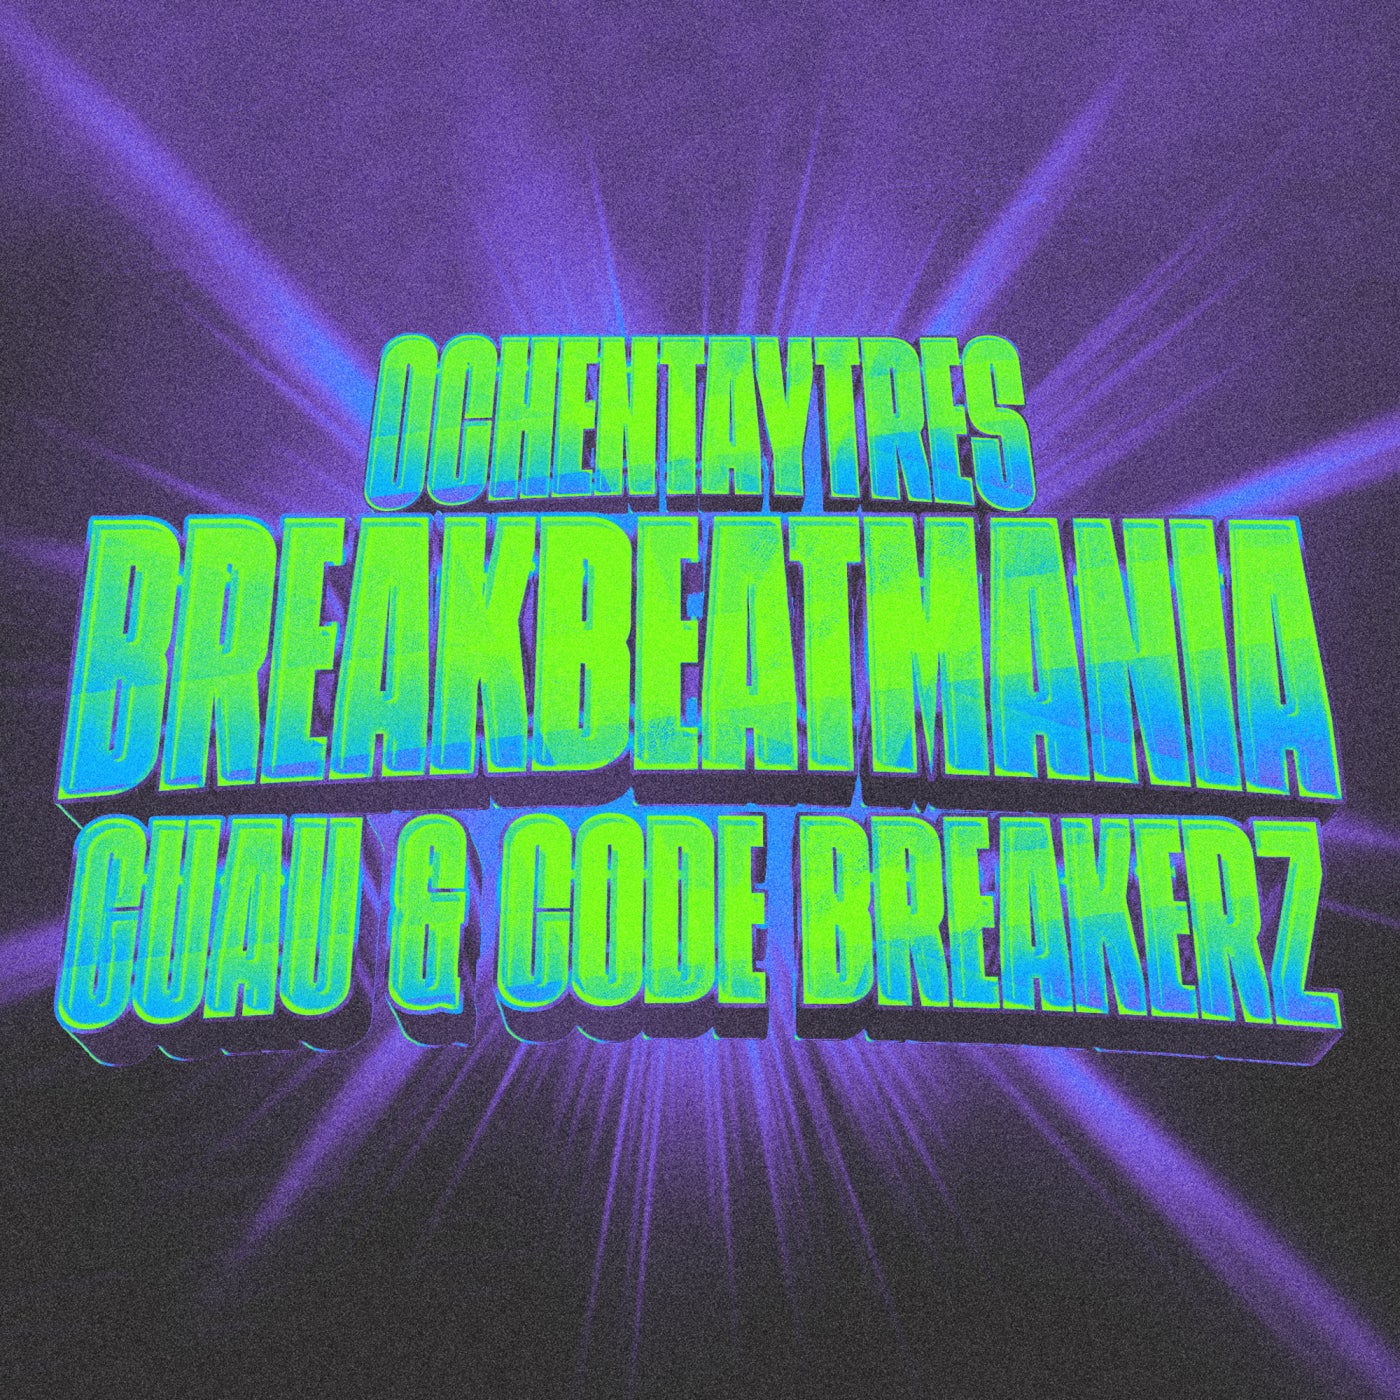 Breakbeatmania